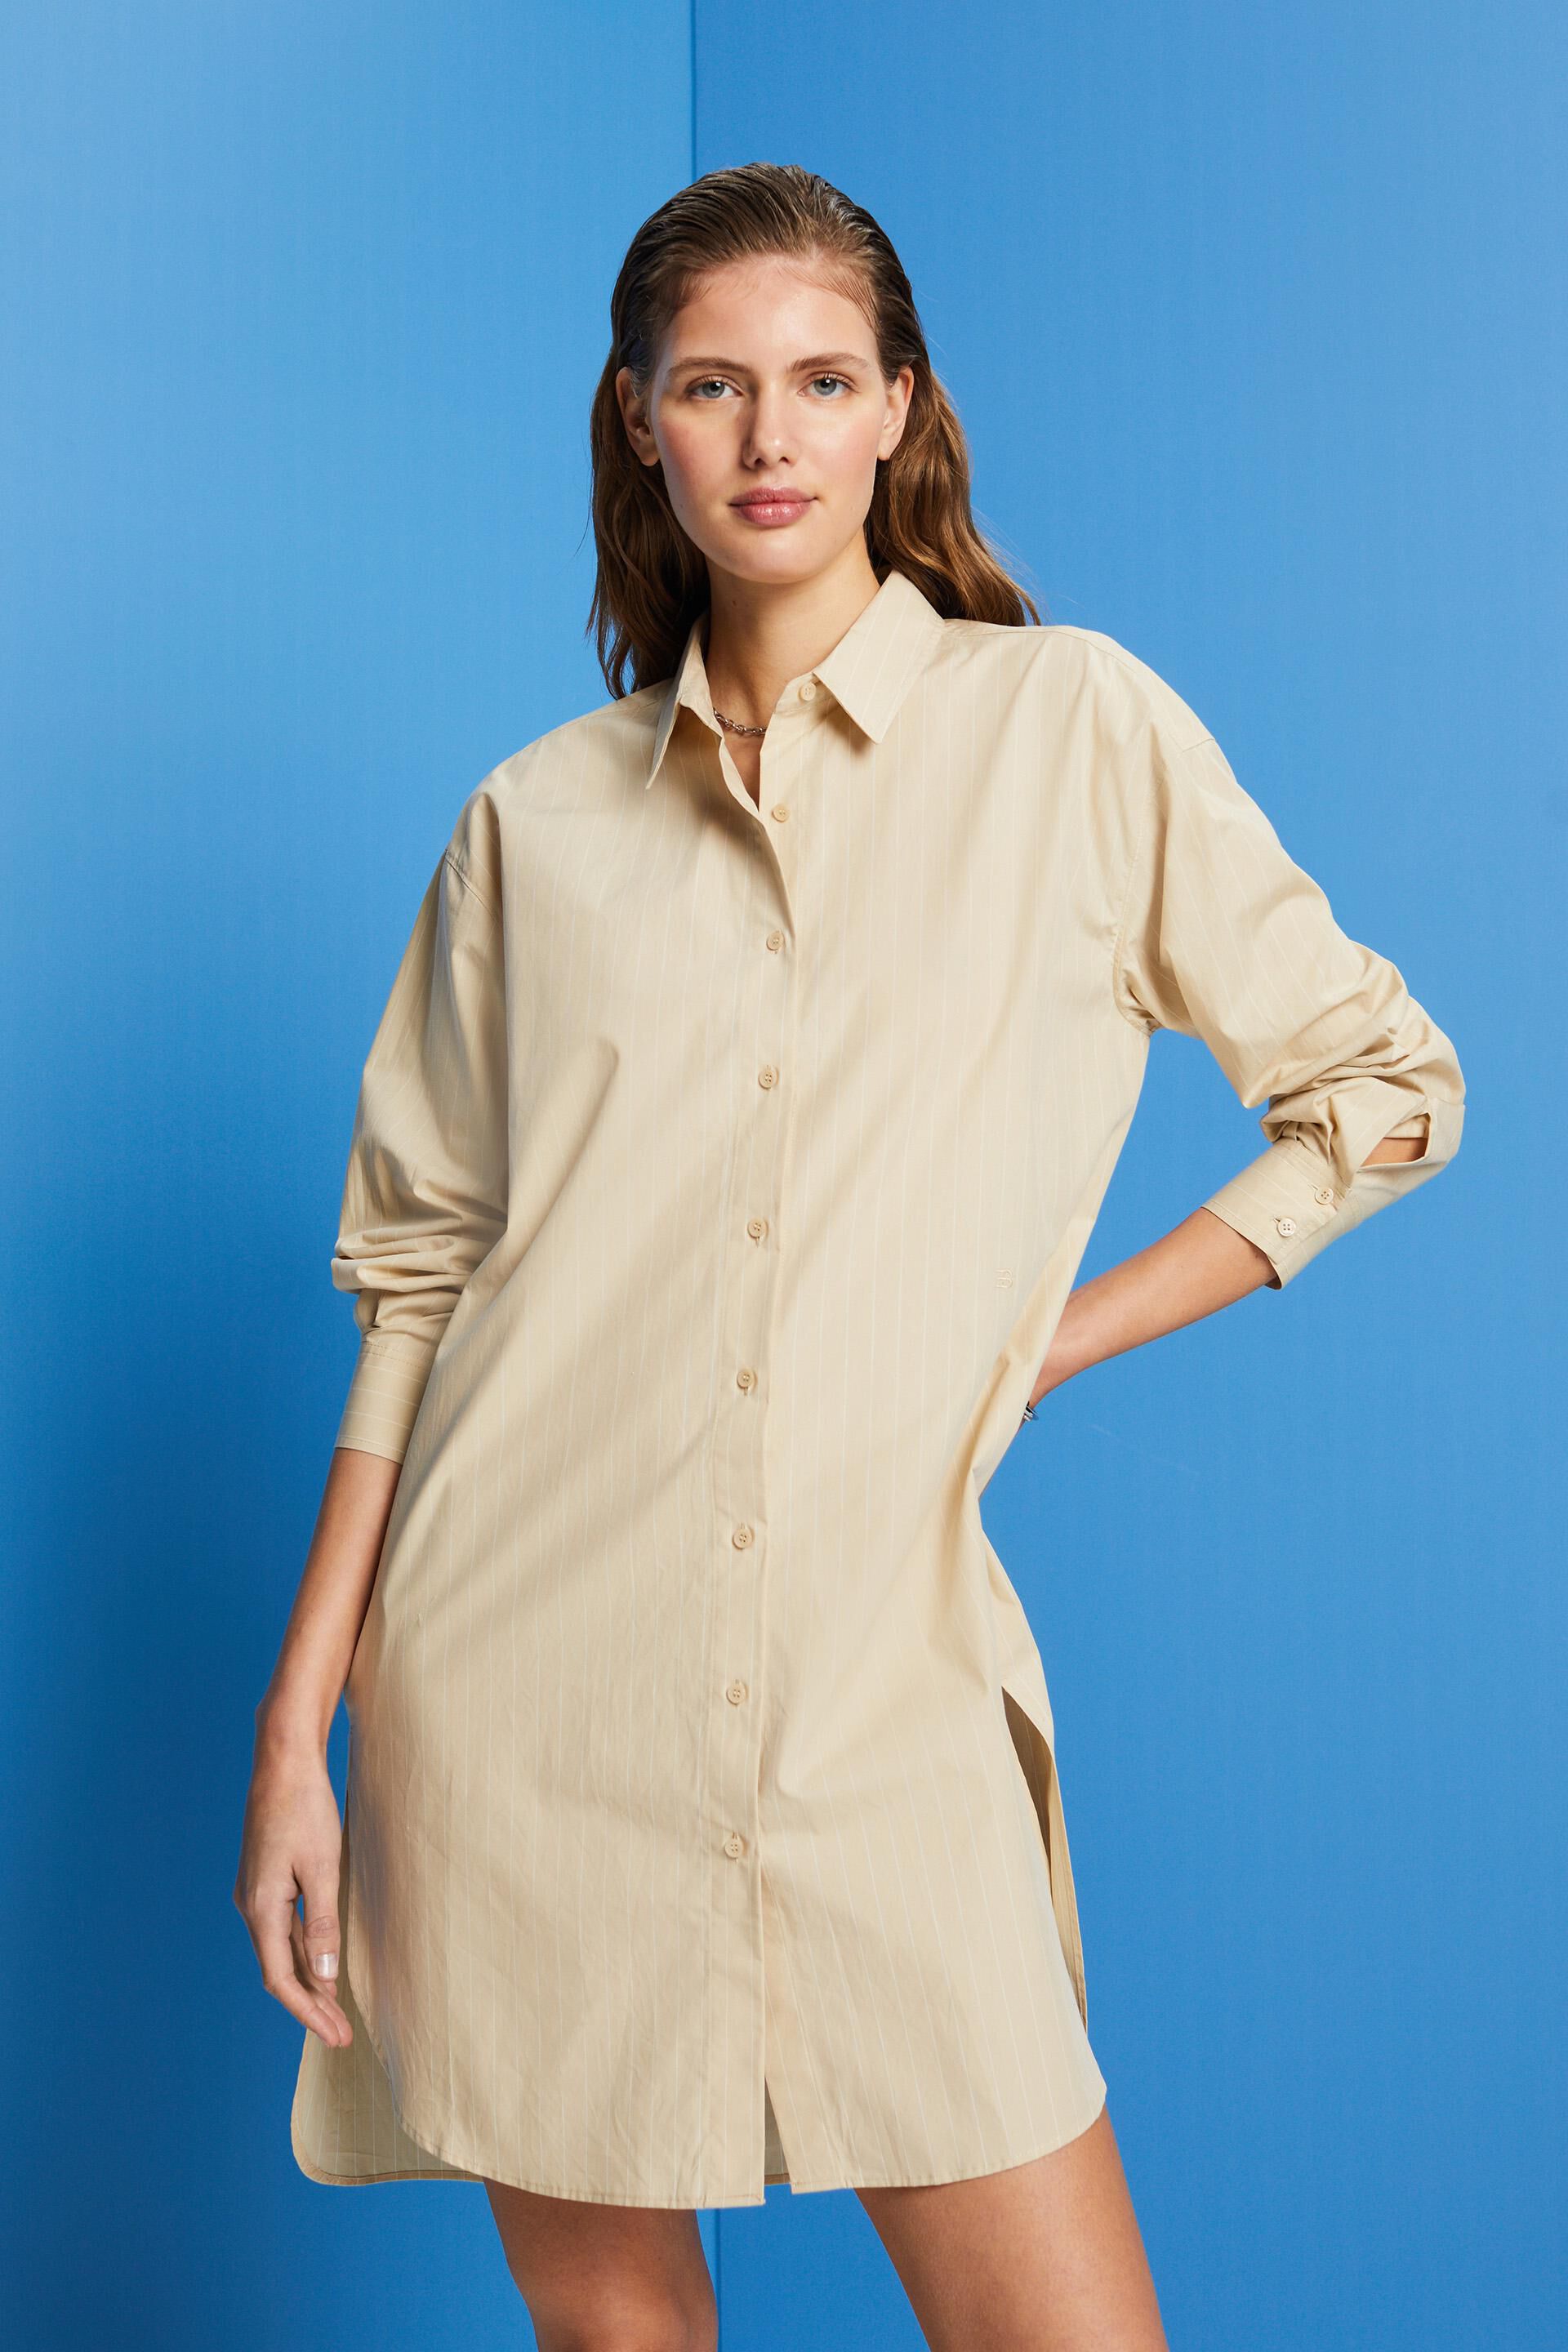 Esprit shirt cotton Pinstriped 100% dress,